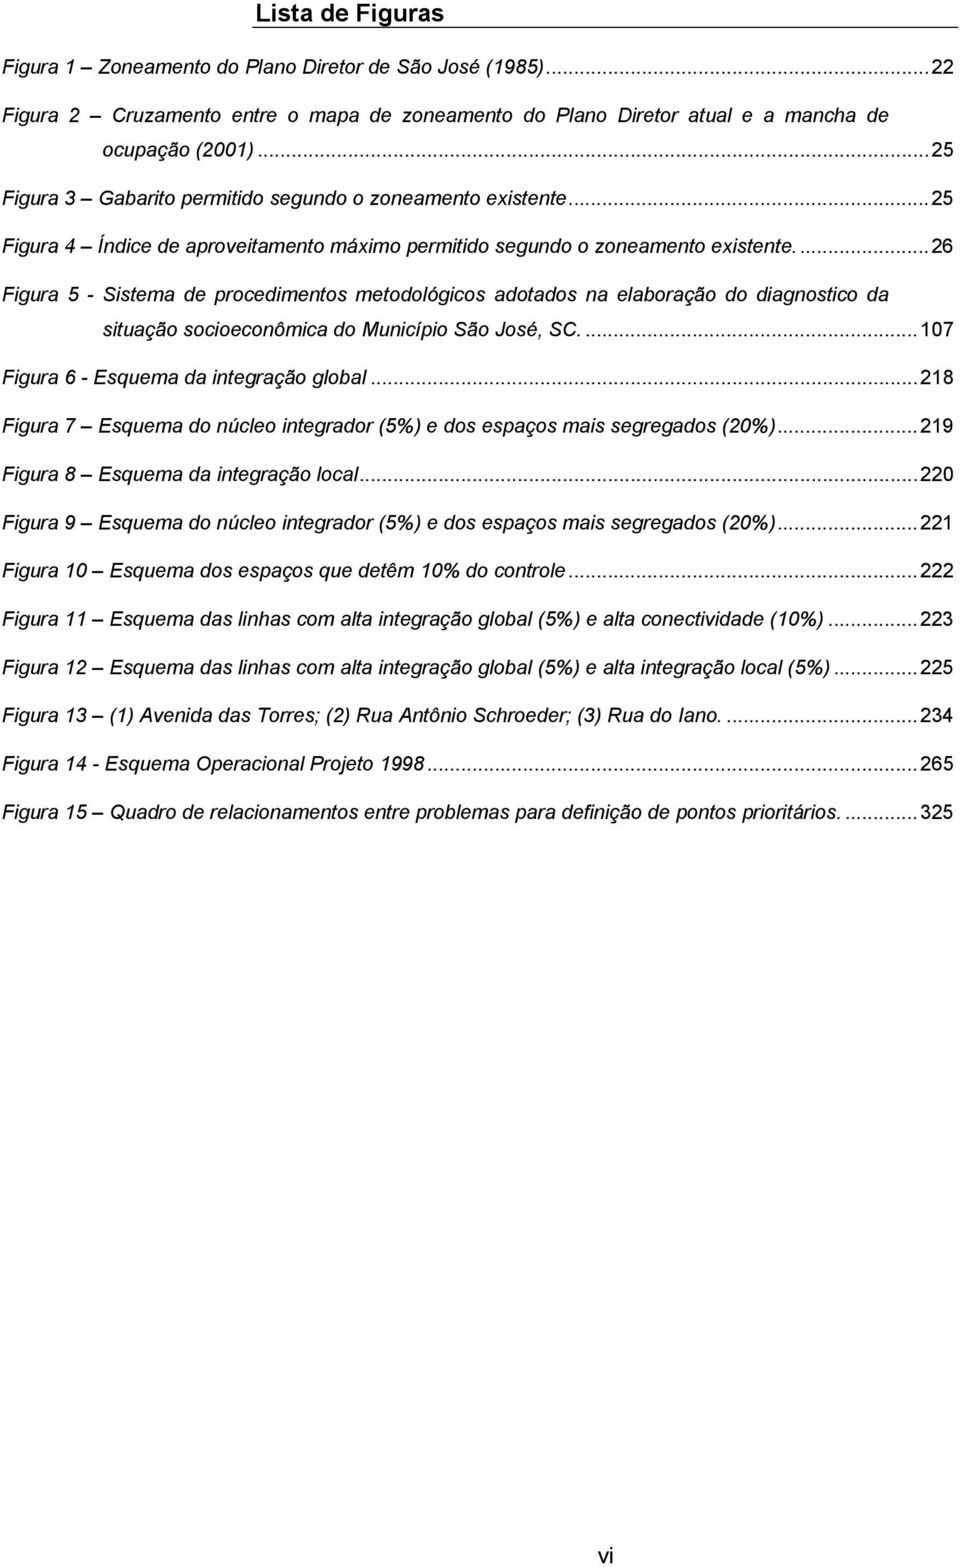 ..26 Figura 5 - Sistema de procedimentos metodológicos adotados na elaboração do diagnostico da situação socioeconômica do Município São José, SC...107 Figura 6 - Esquema da integração global.